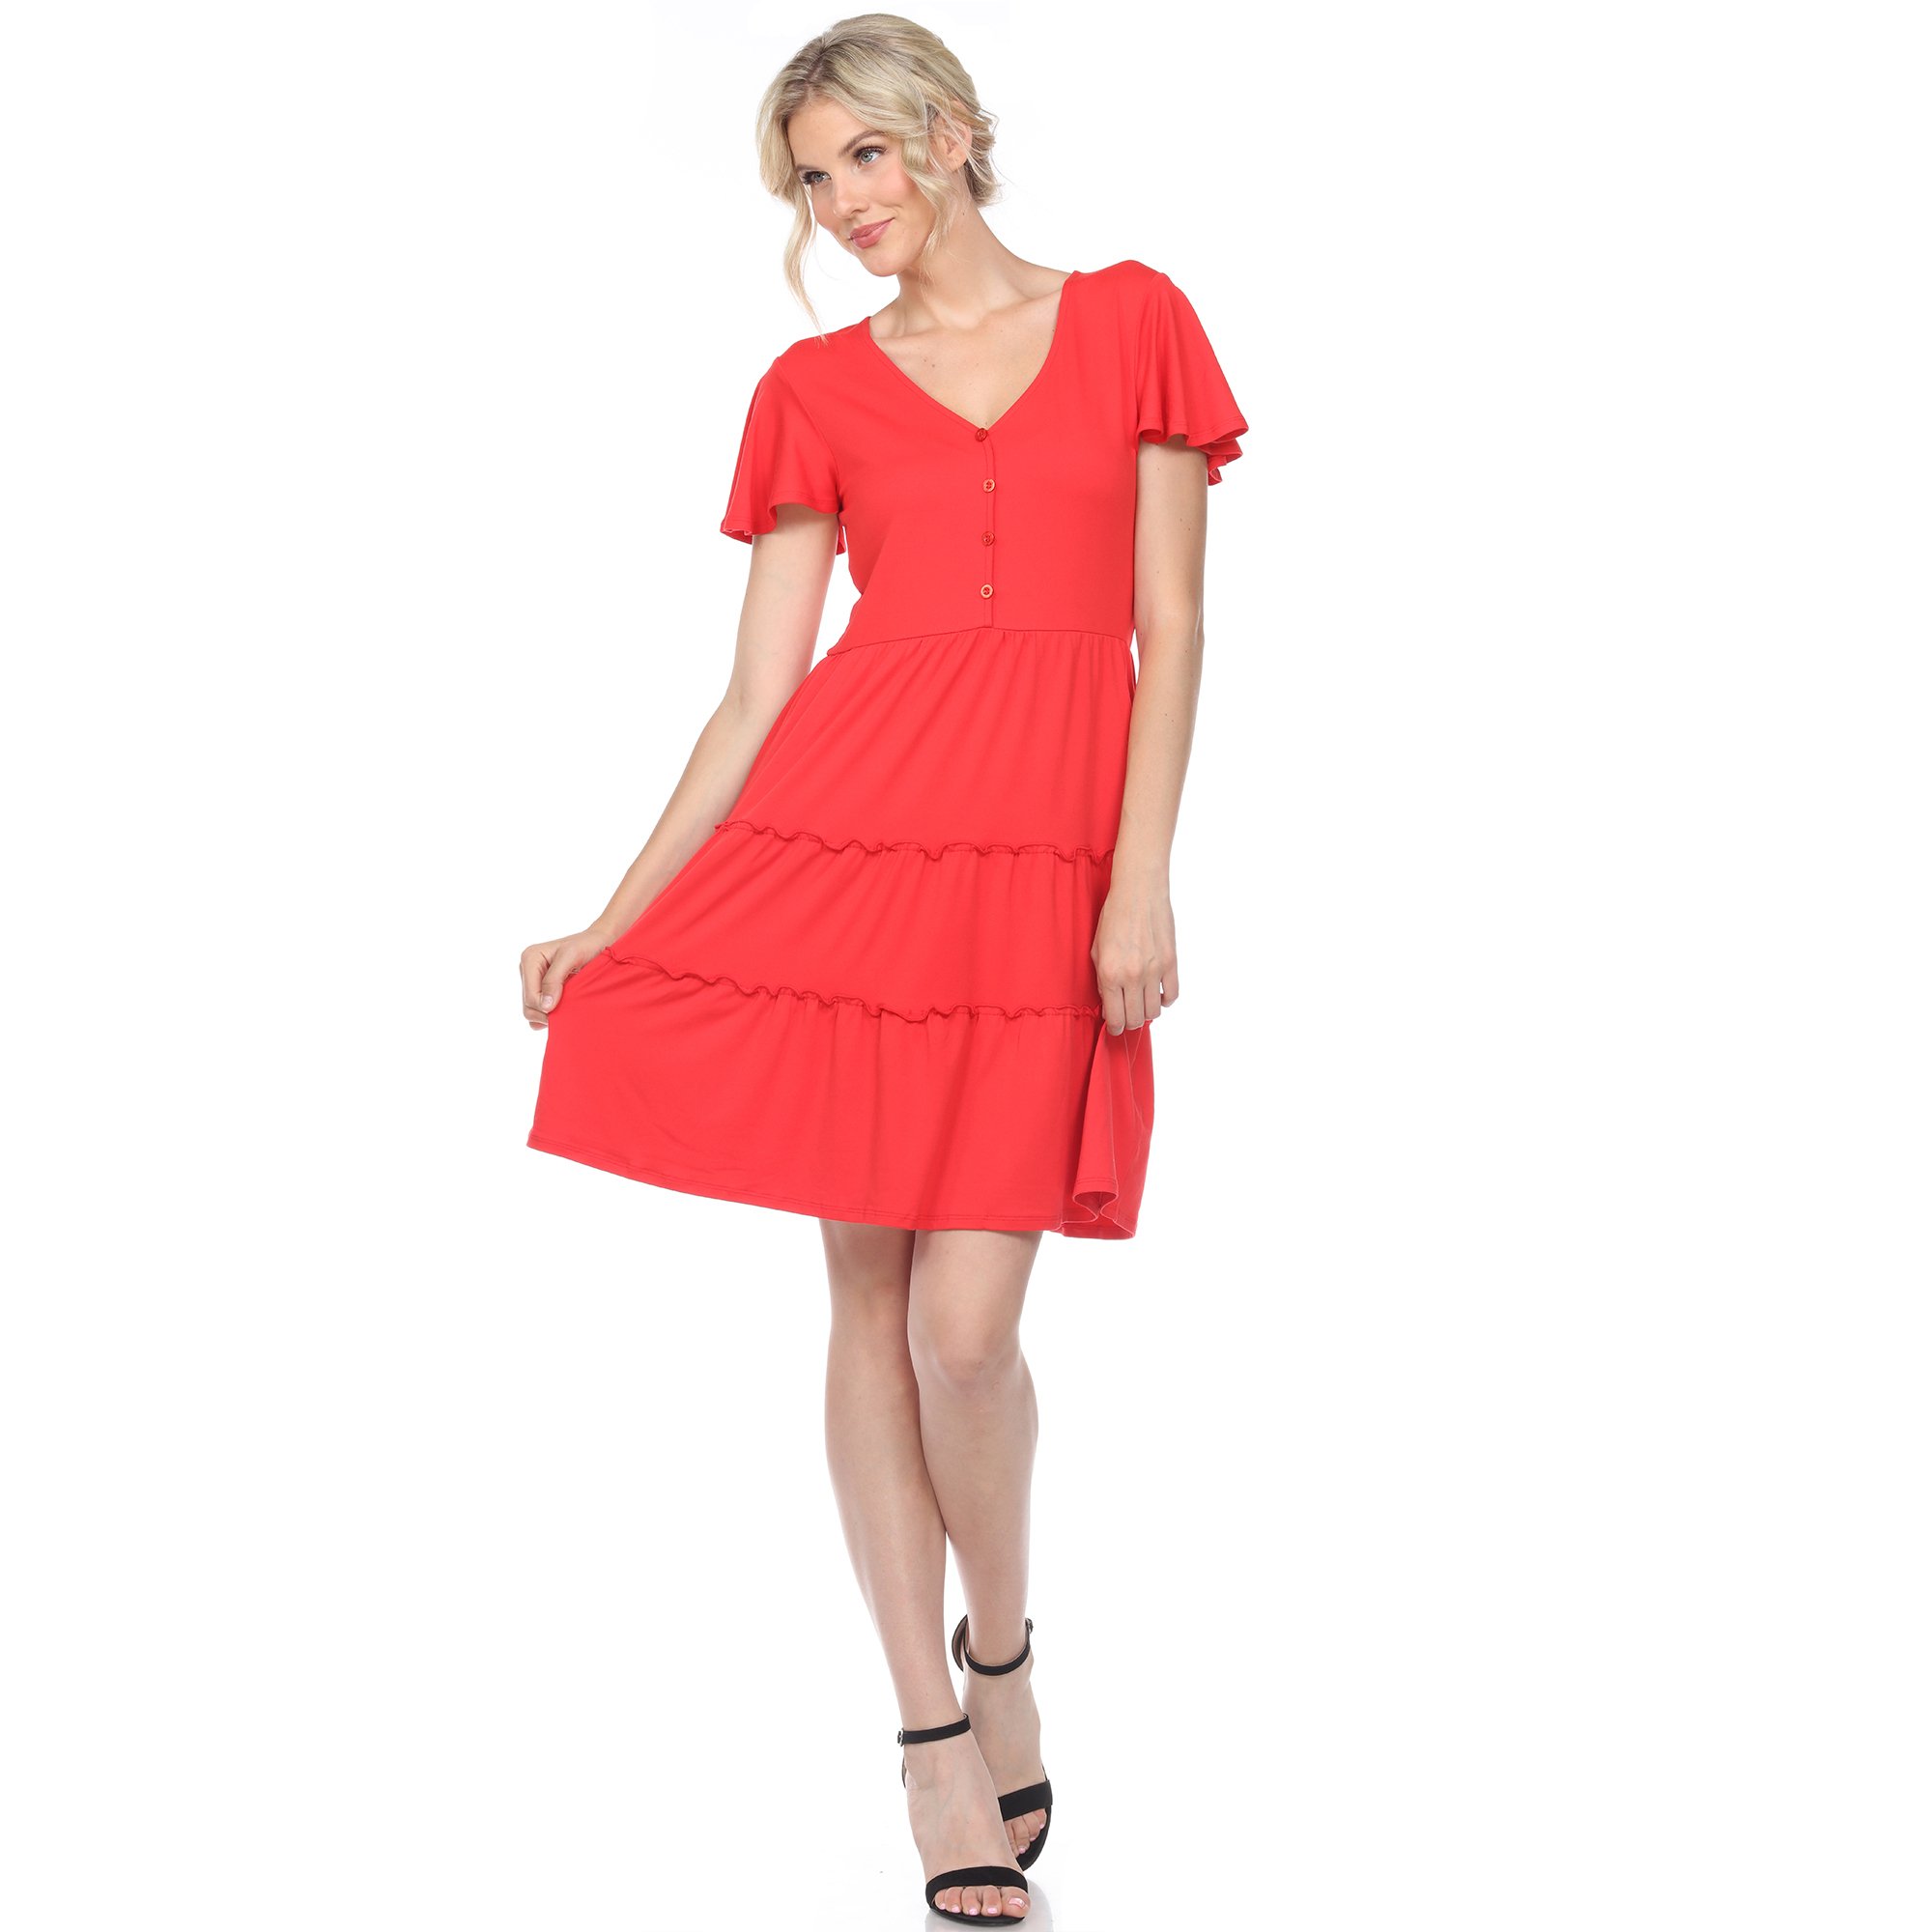 White Mark Women's Short Sleeve V-neck Tiered Dress - Red, Medium